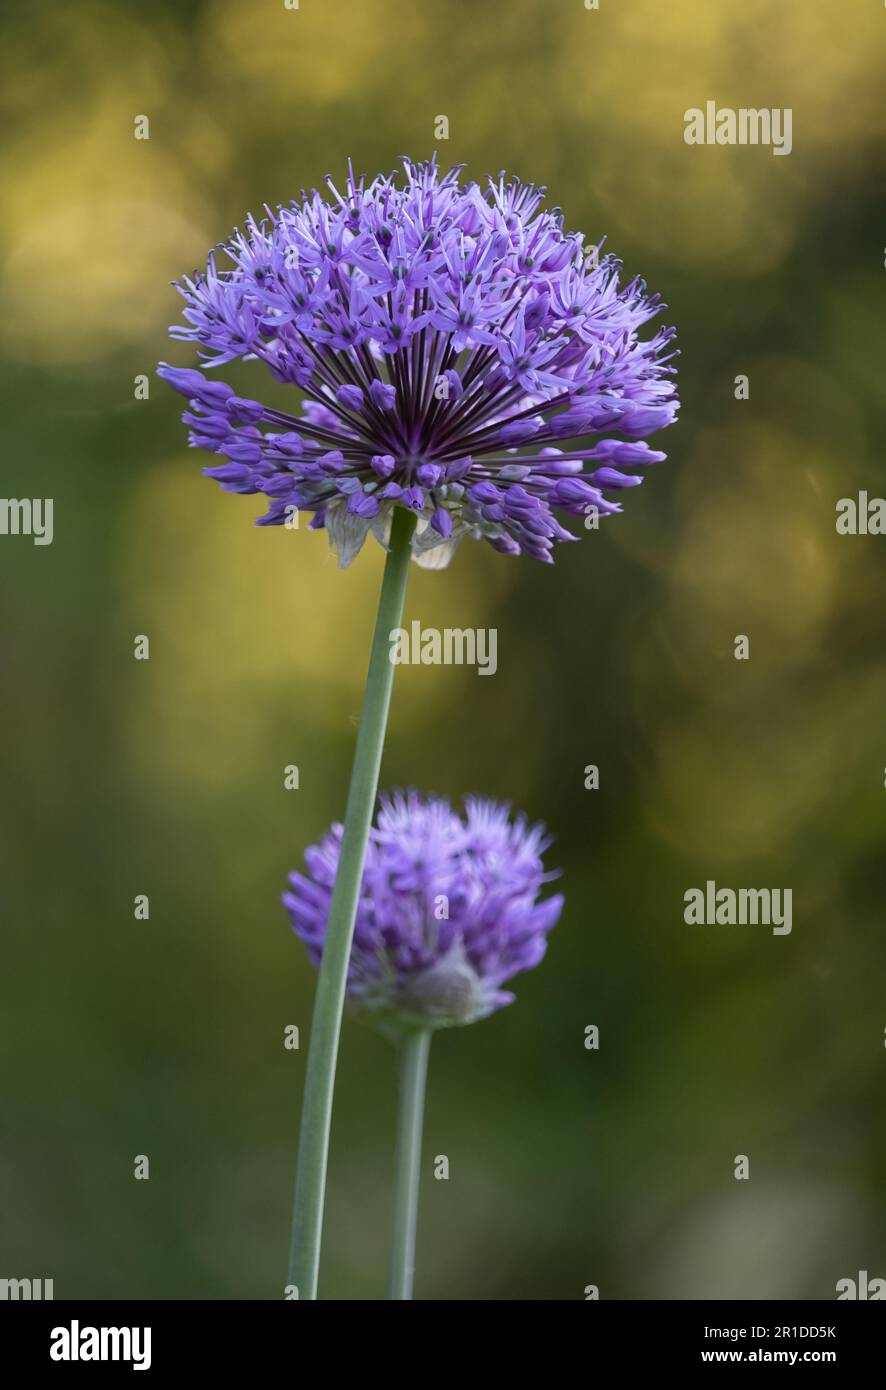 Lila Allium, Allium hollandicum, kugelförmige Blumenköpfe auf üppigem grünen Bokeh-Hintergrund im Frühling oder Sommer, Lancaster, Pennsylvania Stockfoto